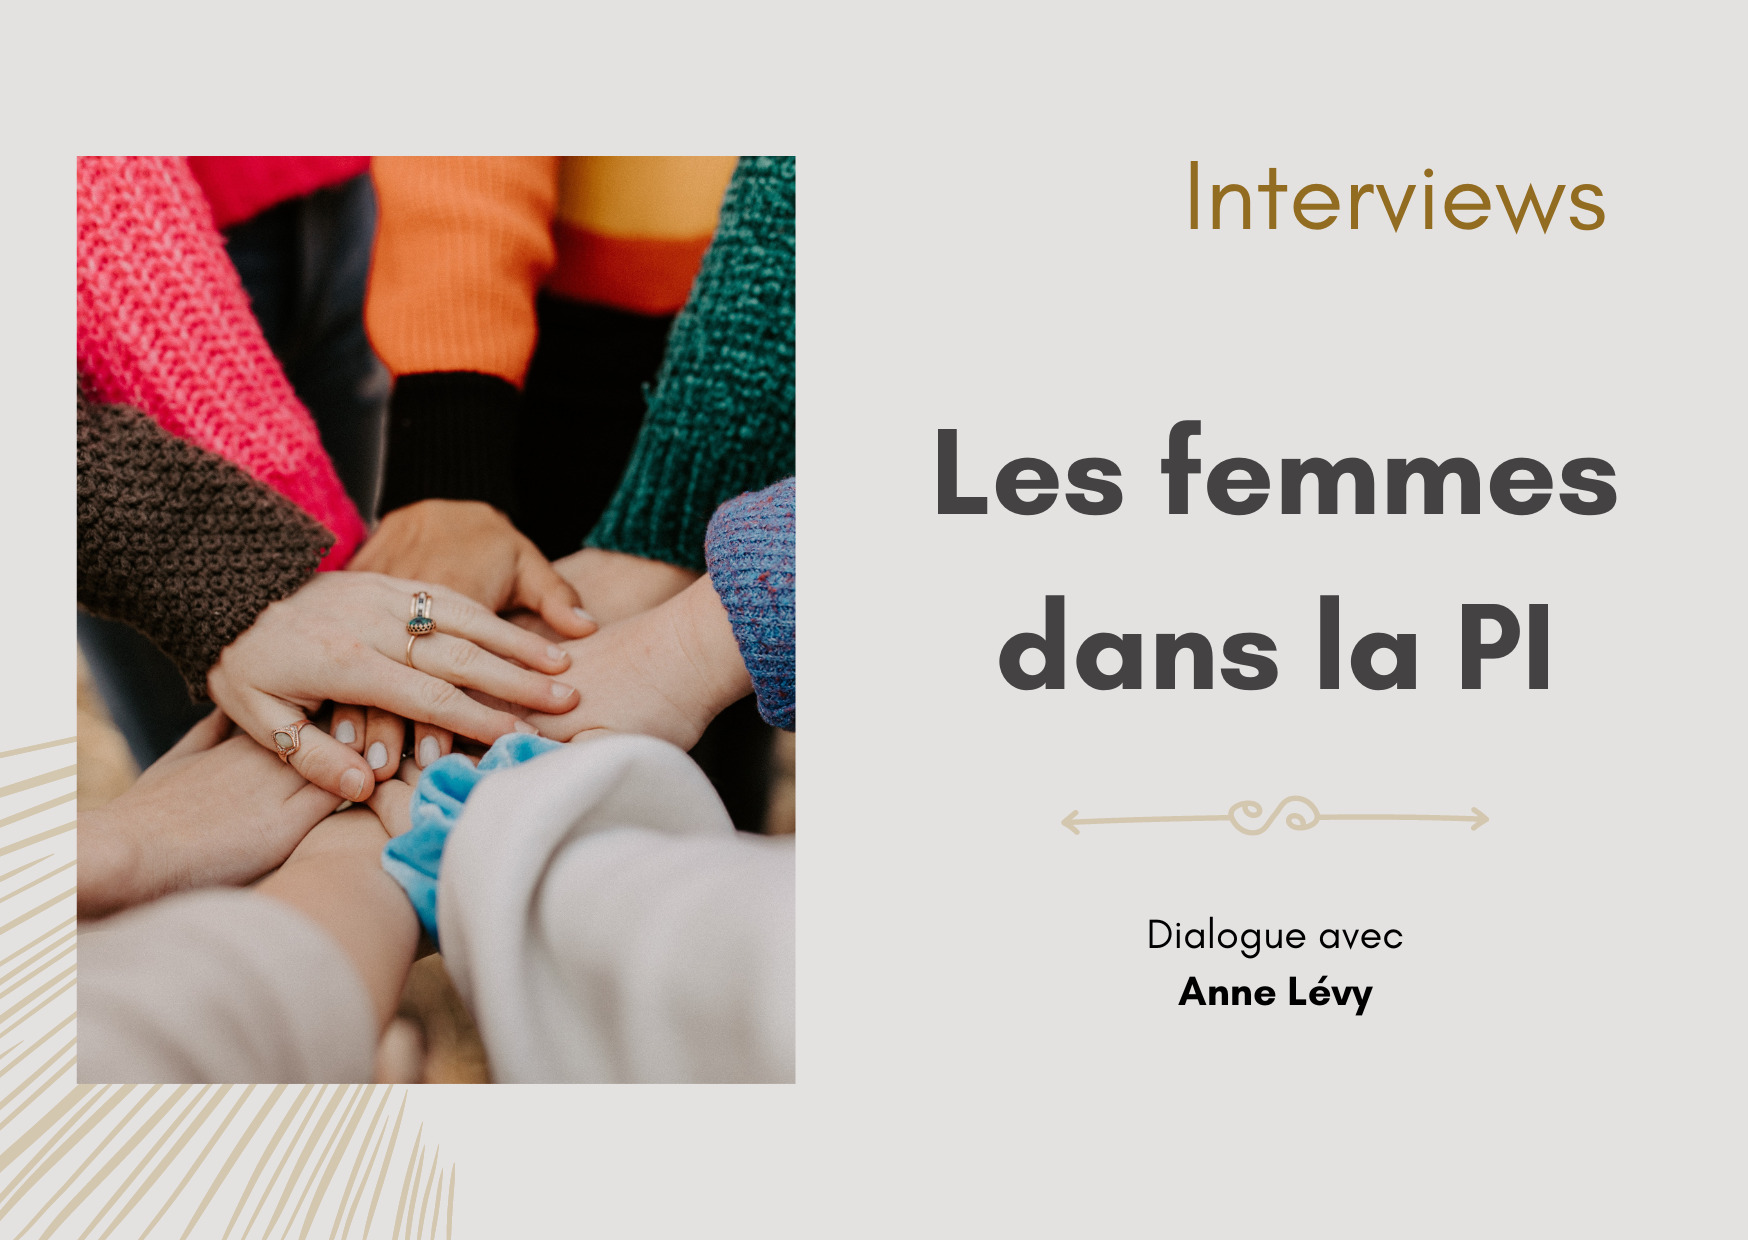 Les femmes dans la PI : Anne Lévy